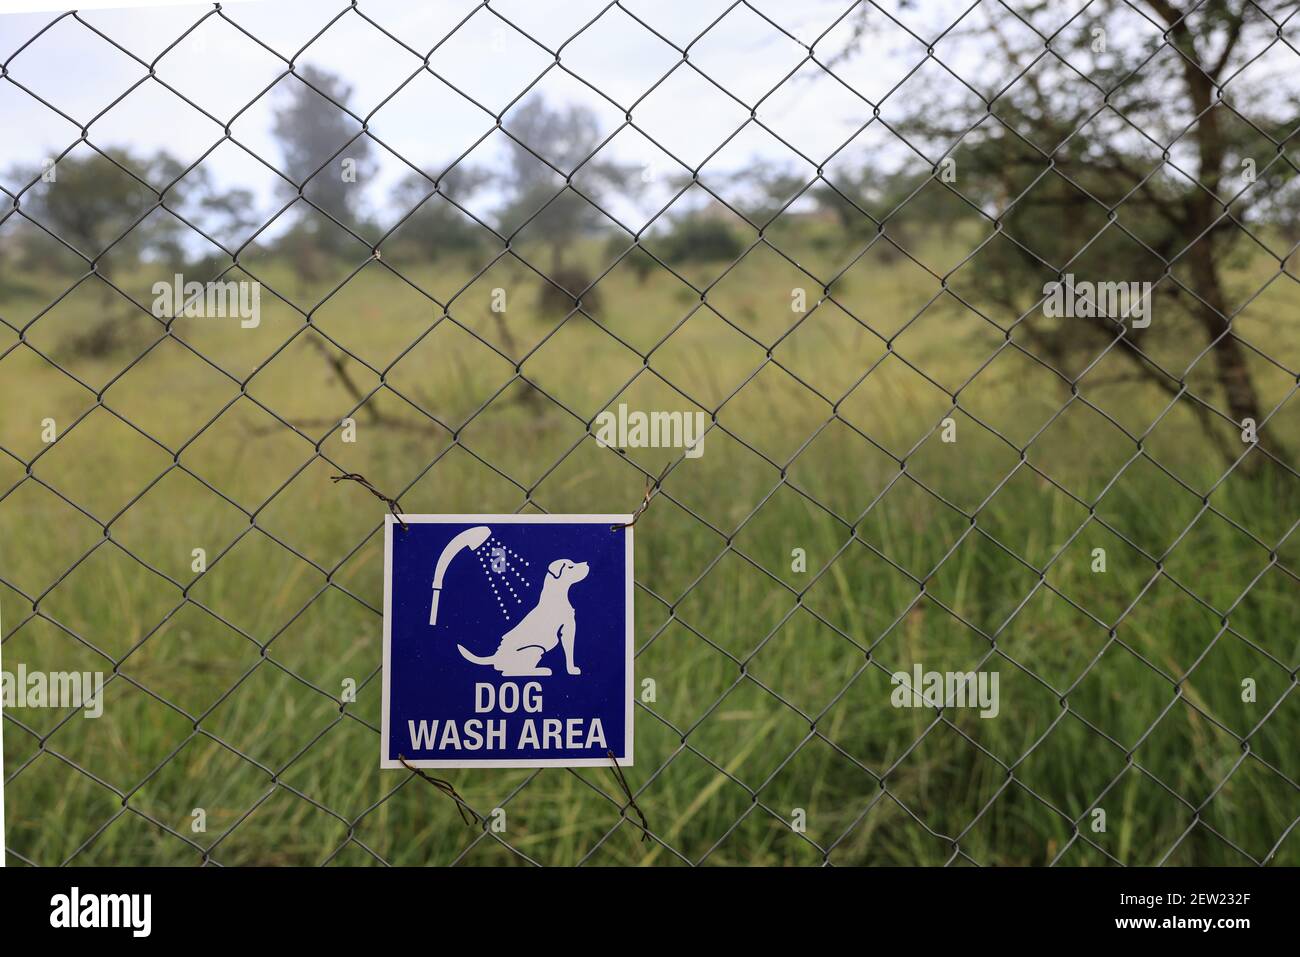 Tanzania, unidad canina Ikoma donde se reúnen los perros anticaza furtiva del Parque Serengeti, los perros tienen su propia zona de ducha, que toman cada semana bajo los ojos vigilantes de sus cuidadores Foto de stock